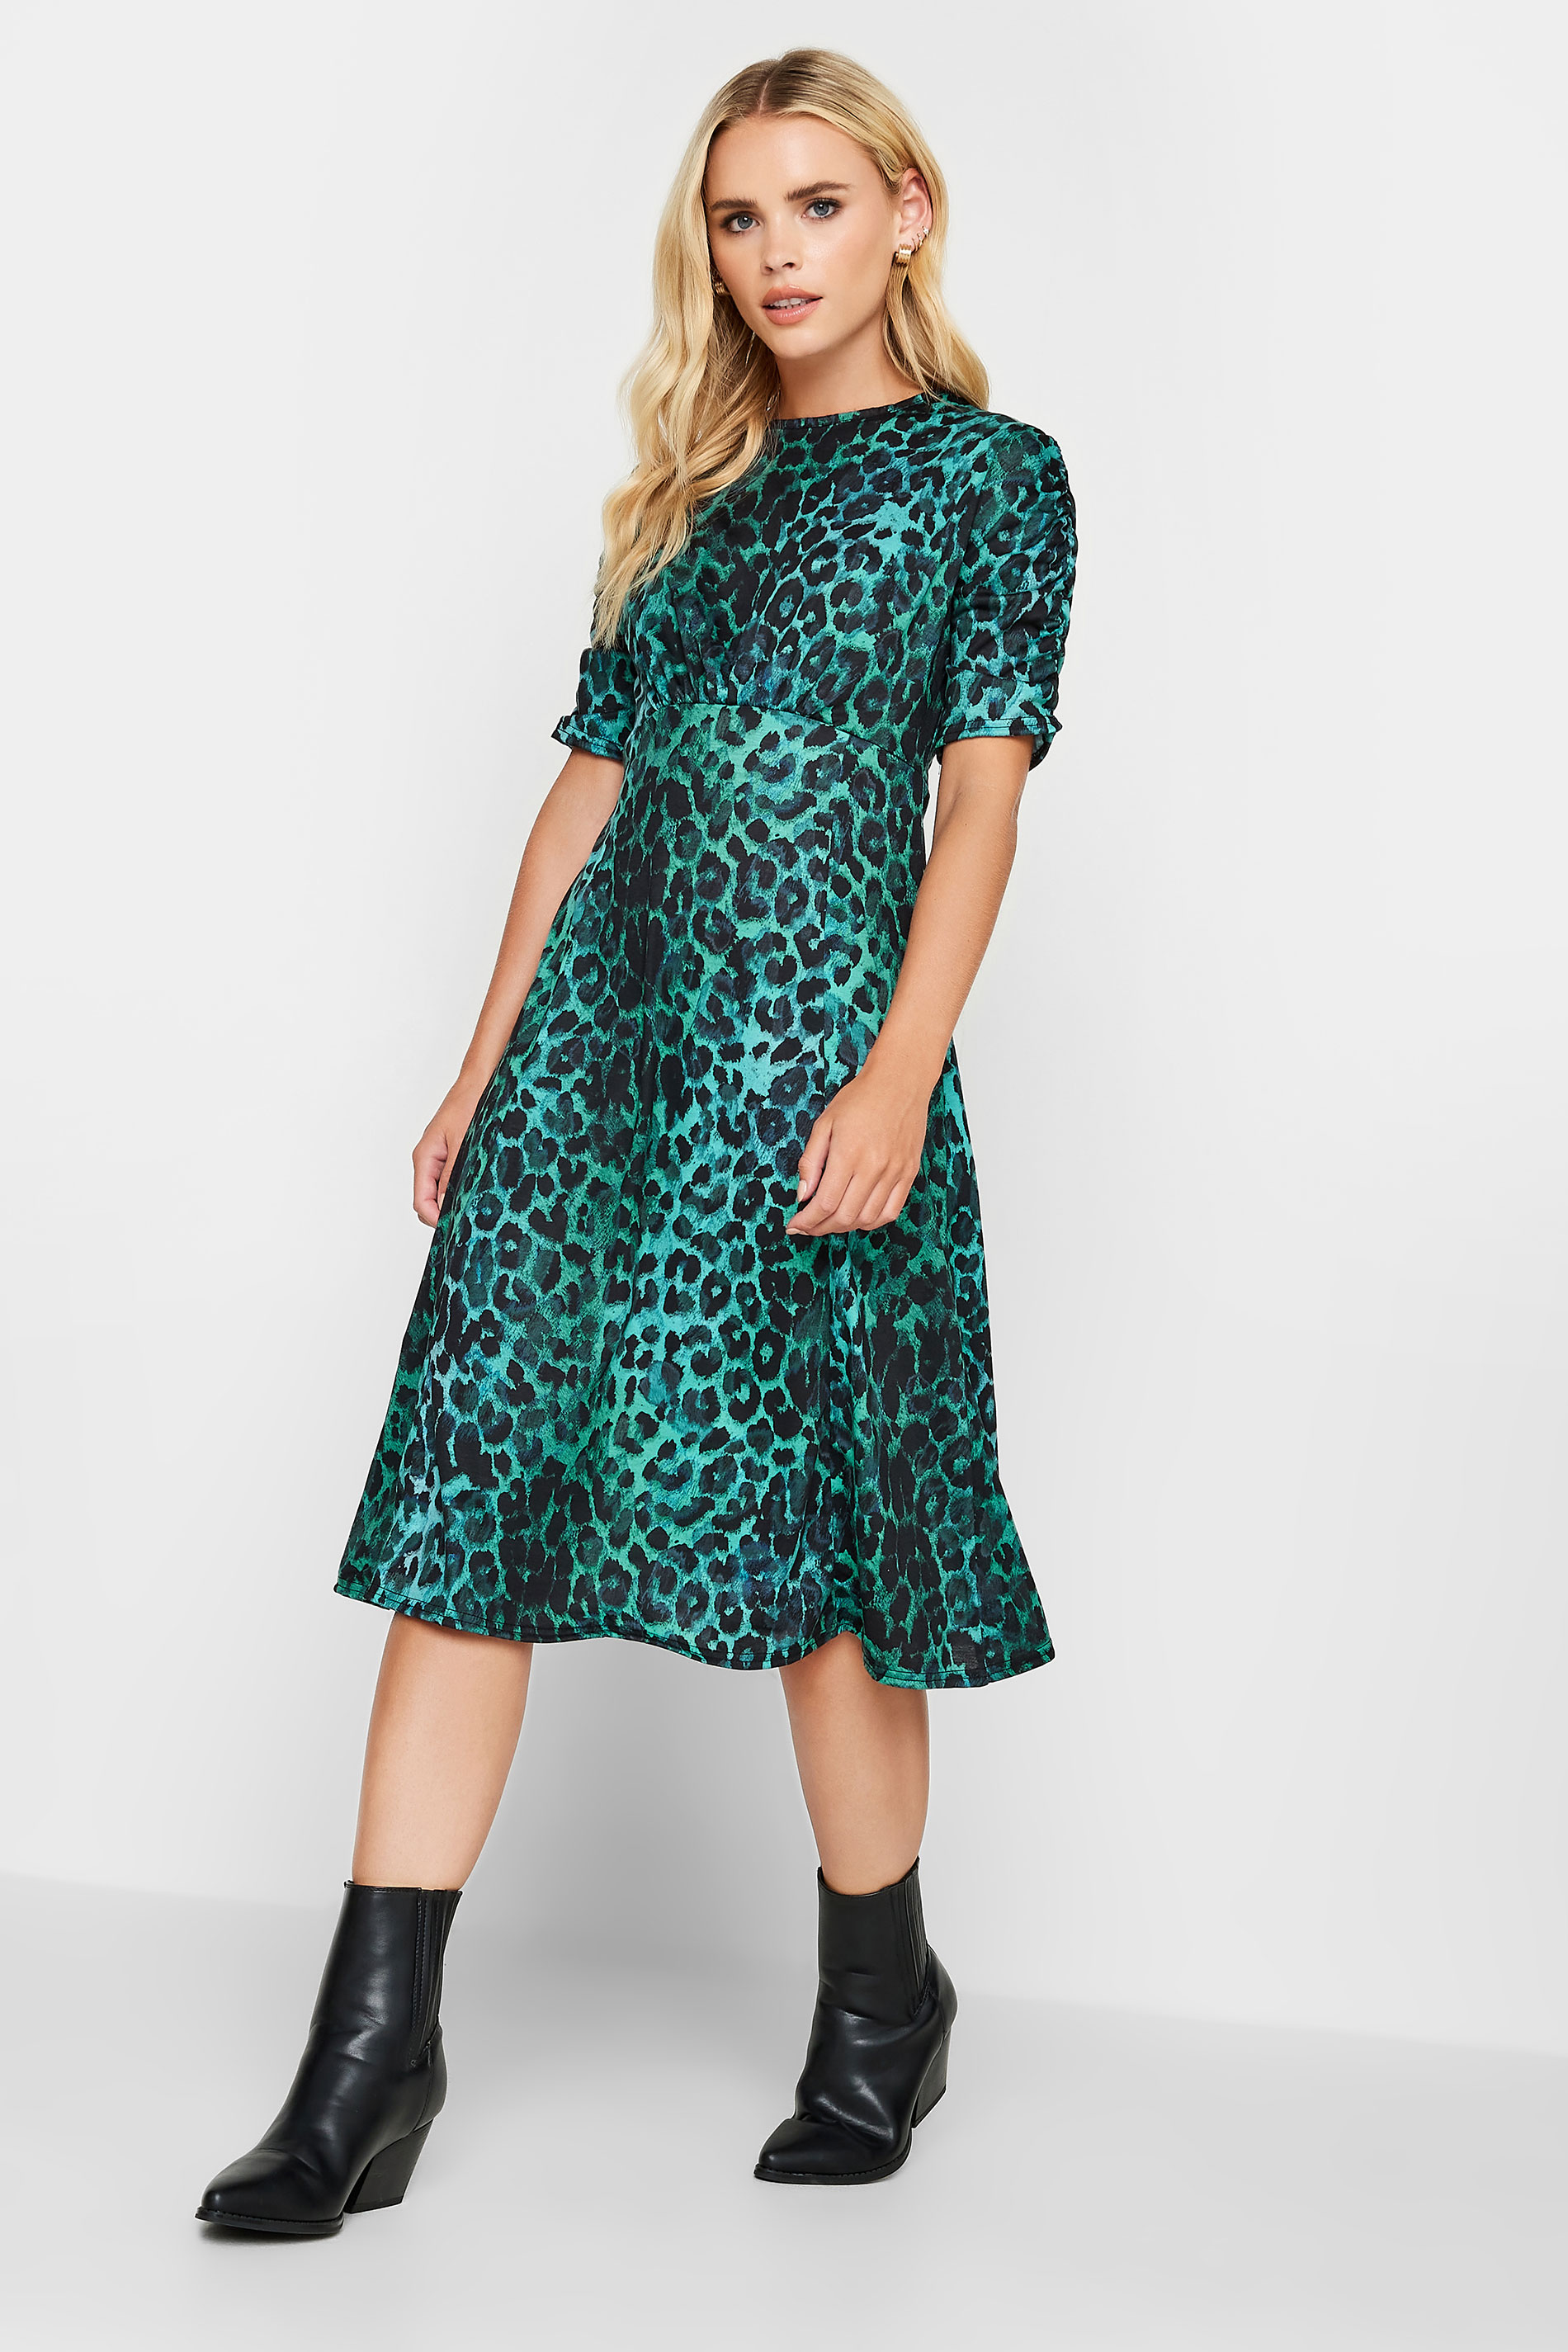 PixieGirl Blue Leopard Print Midi Dress | PixieGirl  1